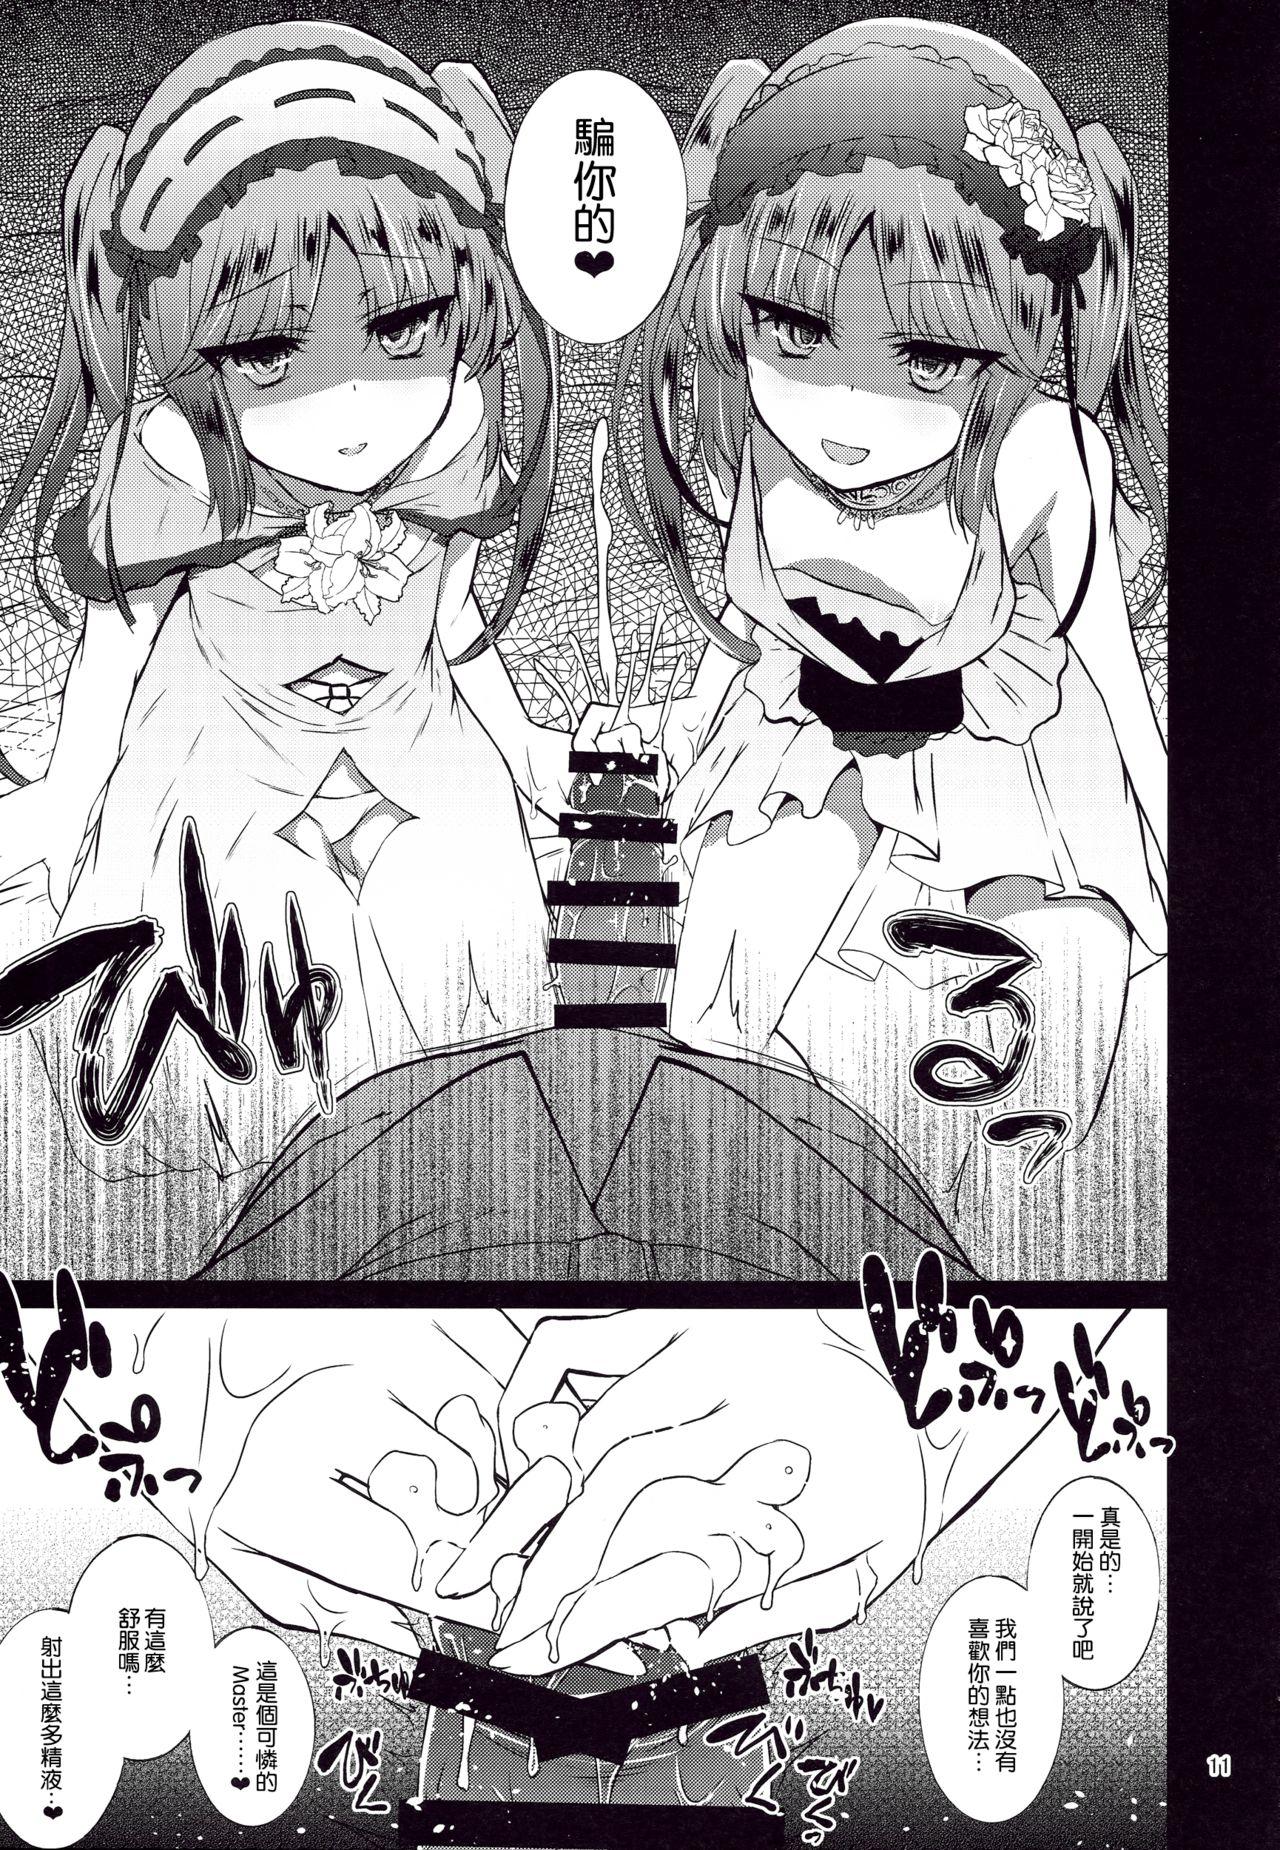 Oral Megami no Itazura - Fate grand order Camgirl - Page 11